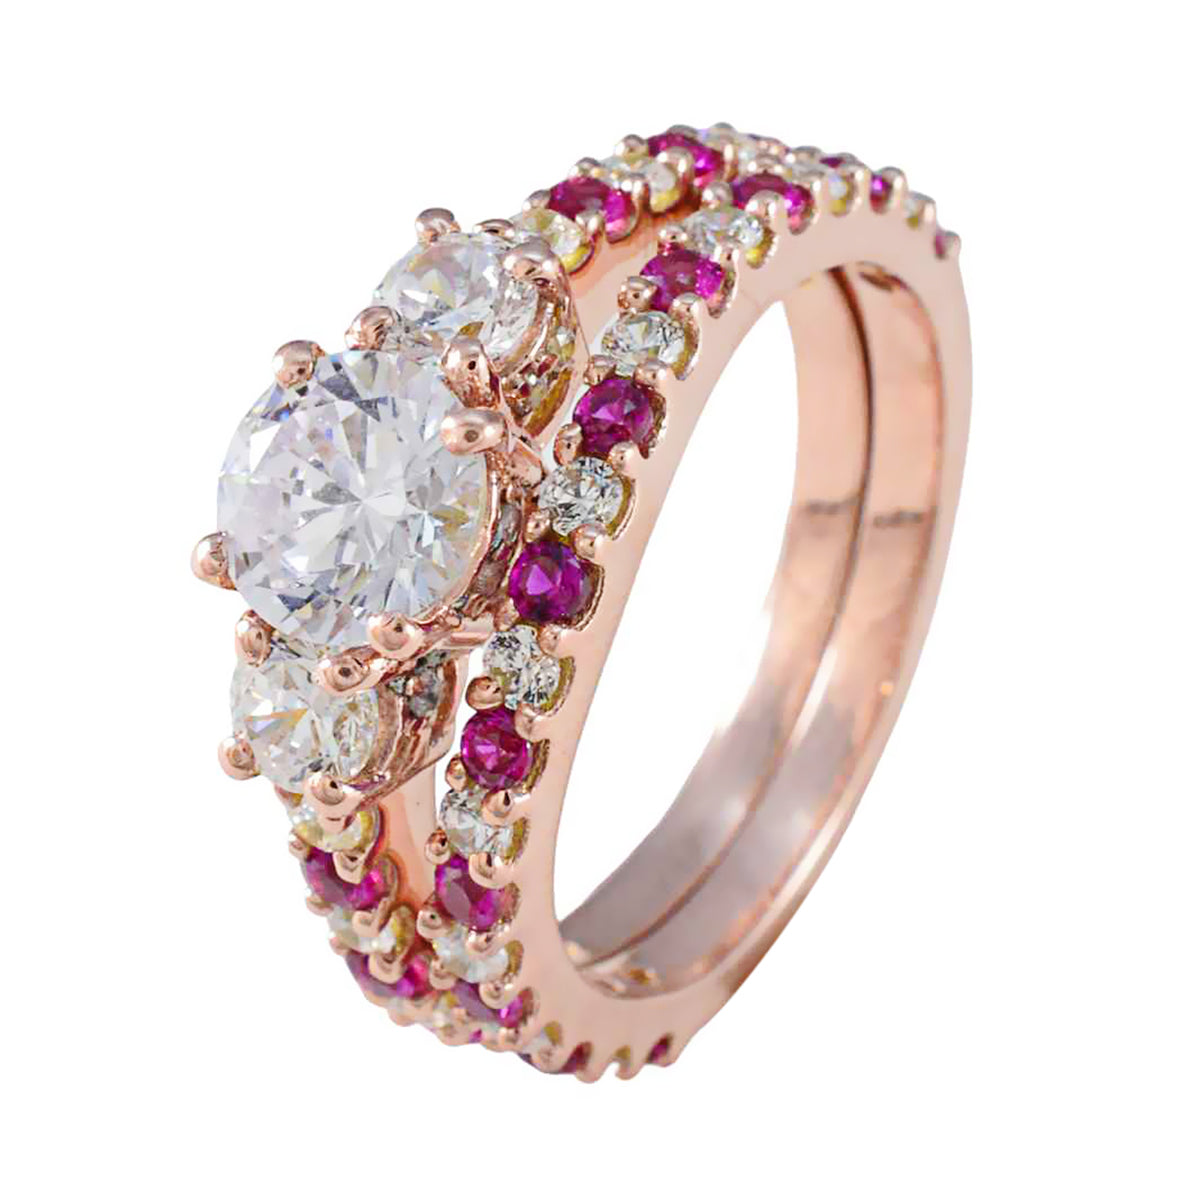 riyo miglior anello in argento con placcatura in oro rosa rubino cz pietra a forma rotonda con montatura a punta gioielli personalizzati anello black friday